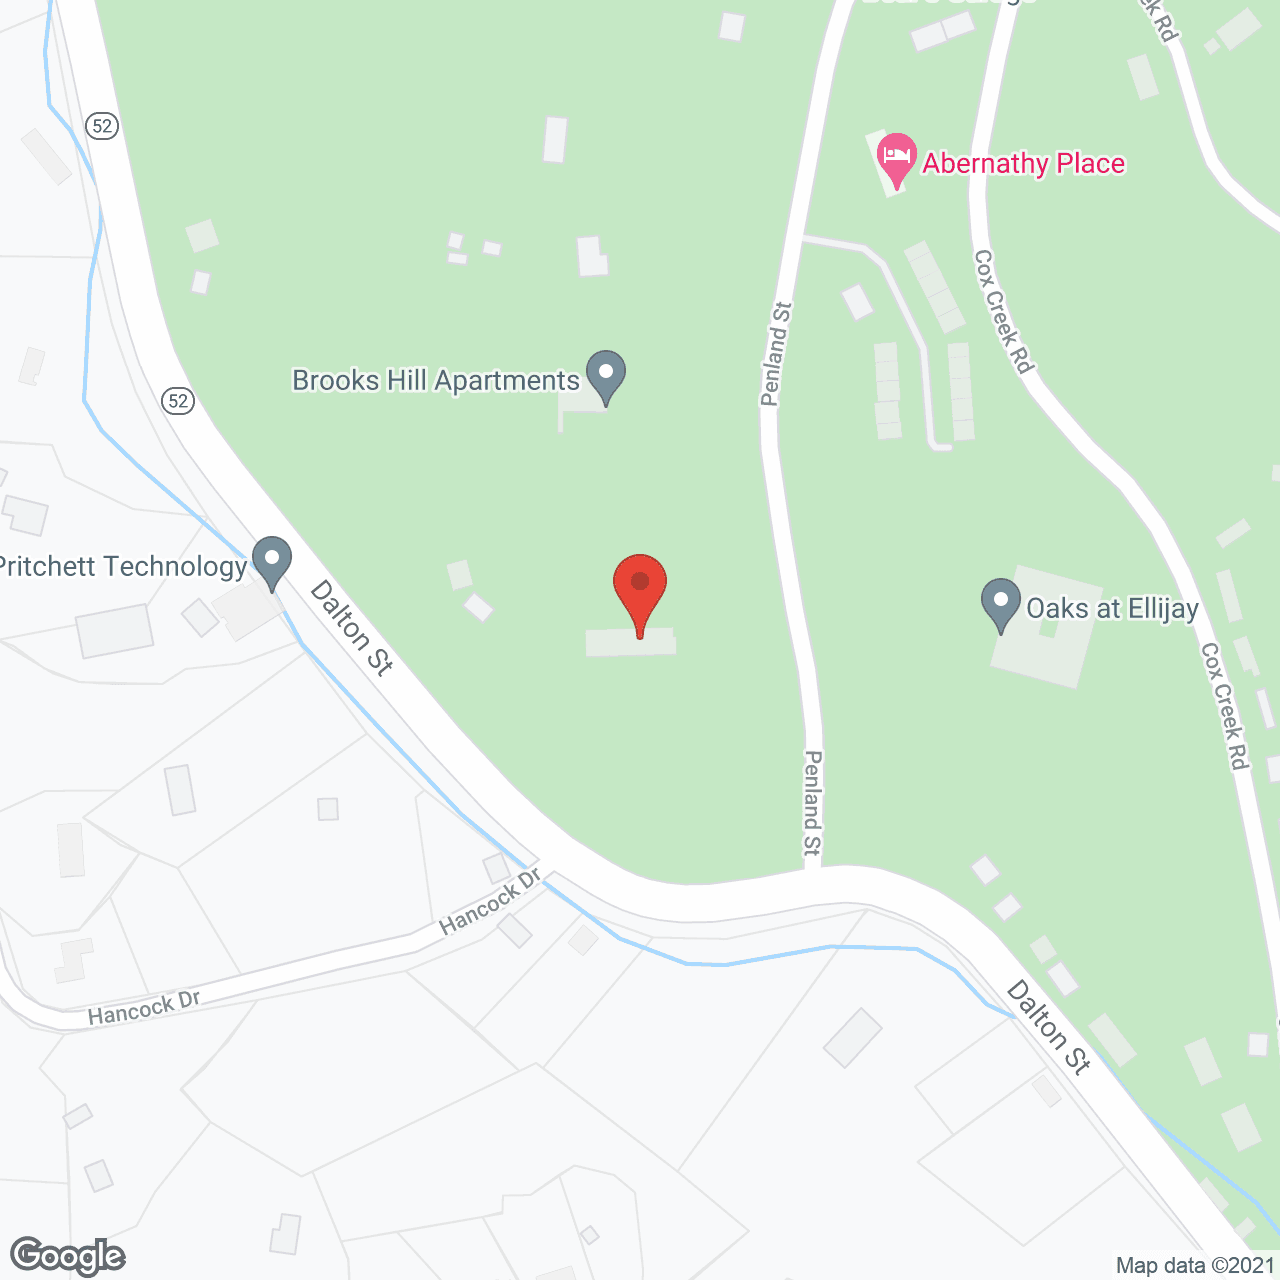 Oaks at Ellijay in google map